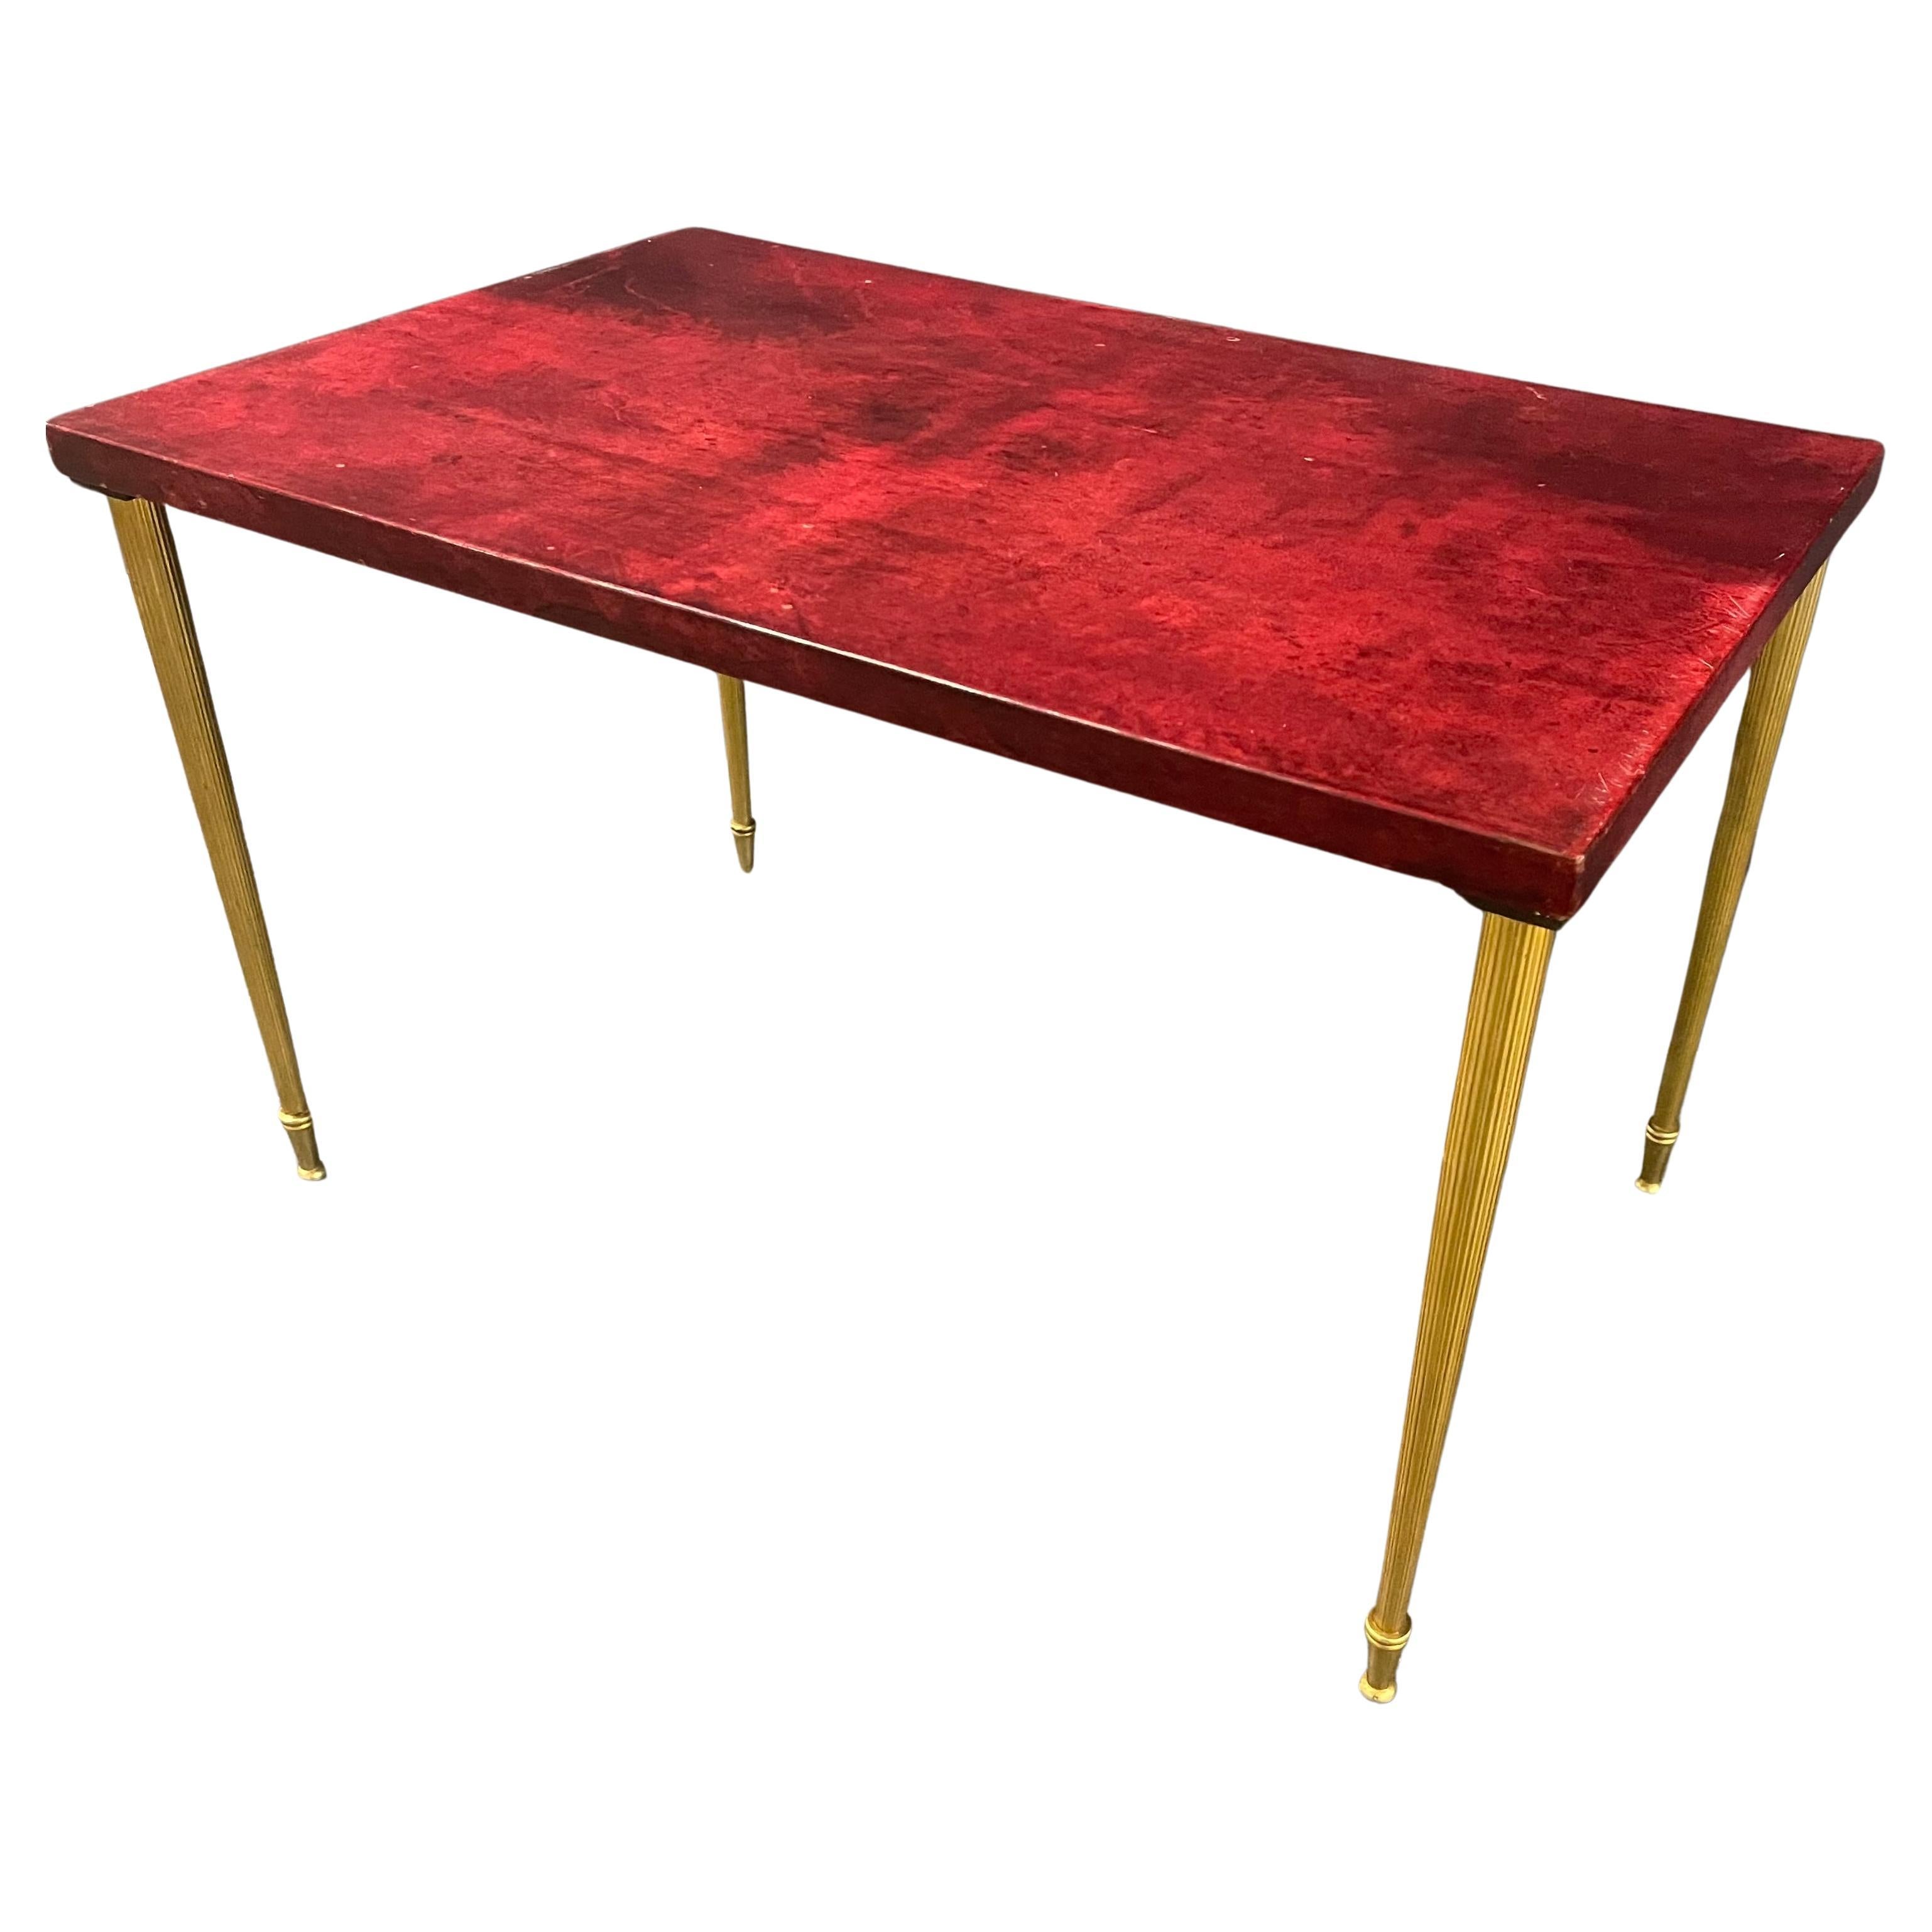 Belle table d'appoint aldo tura - belle couleur